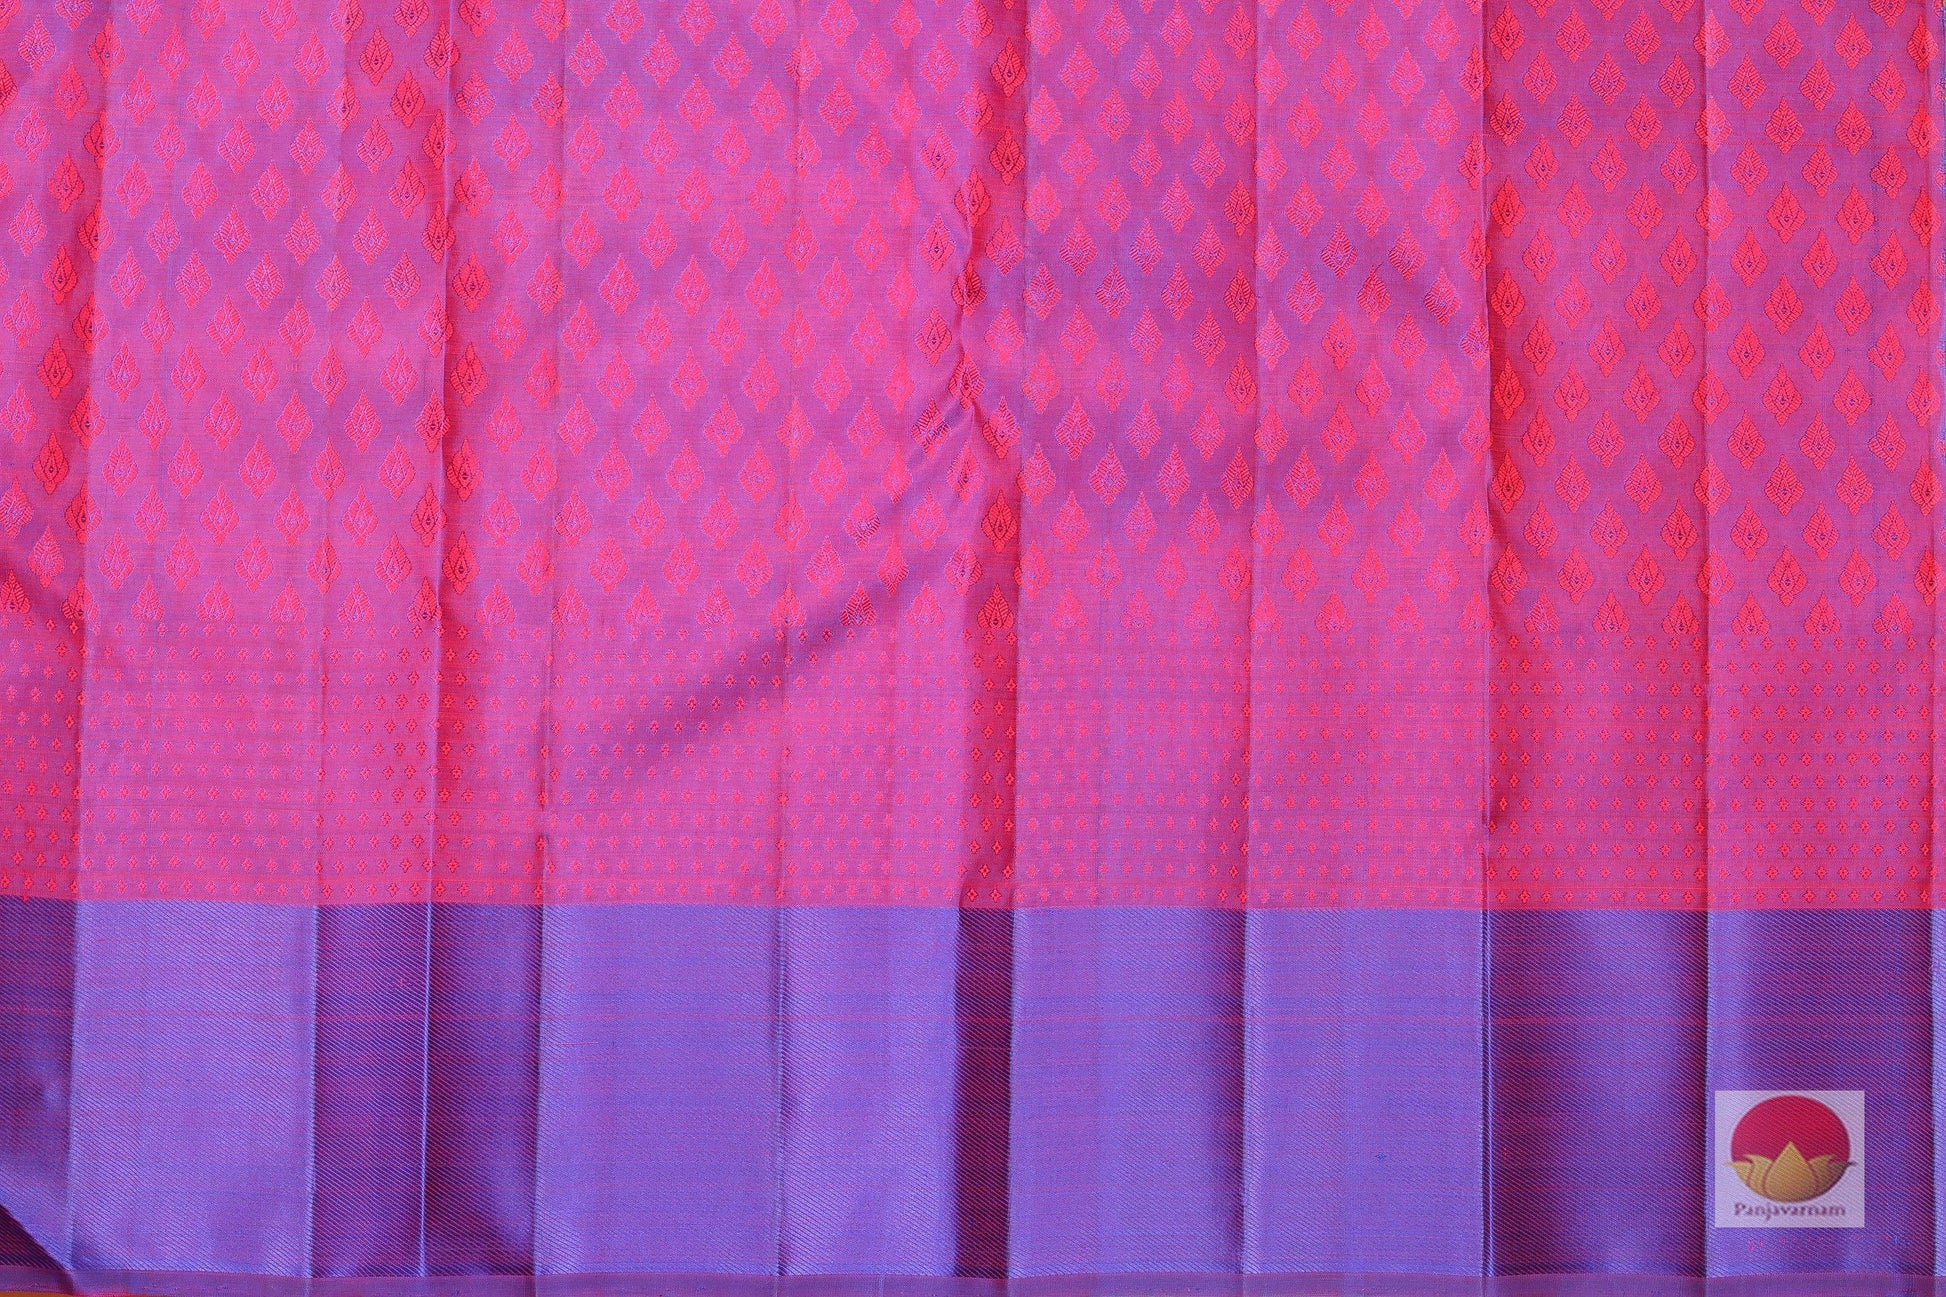 Traditional Design - Handwoven Pure Silk Kanjivaram Saree - Pure Zari - PV G 1732- Archives - Silk Sari - Panjavarnam